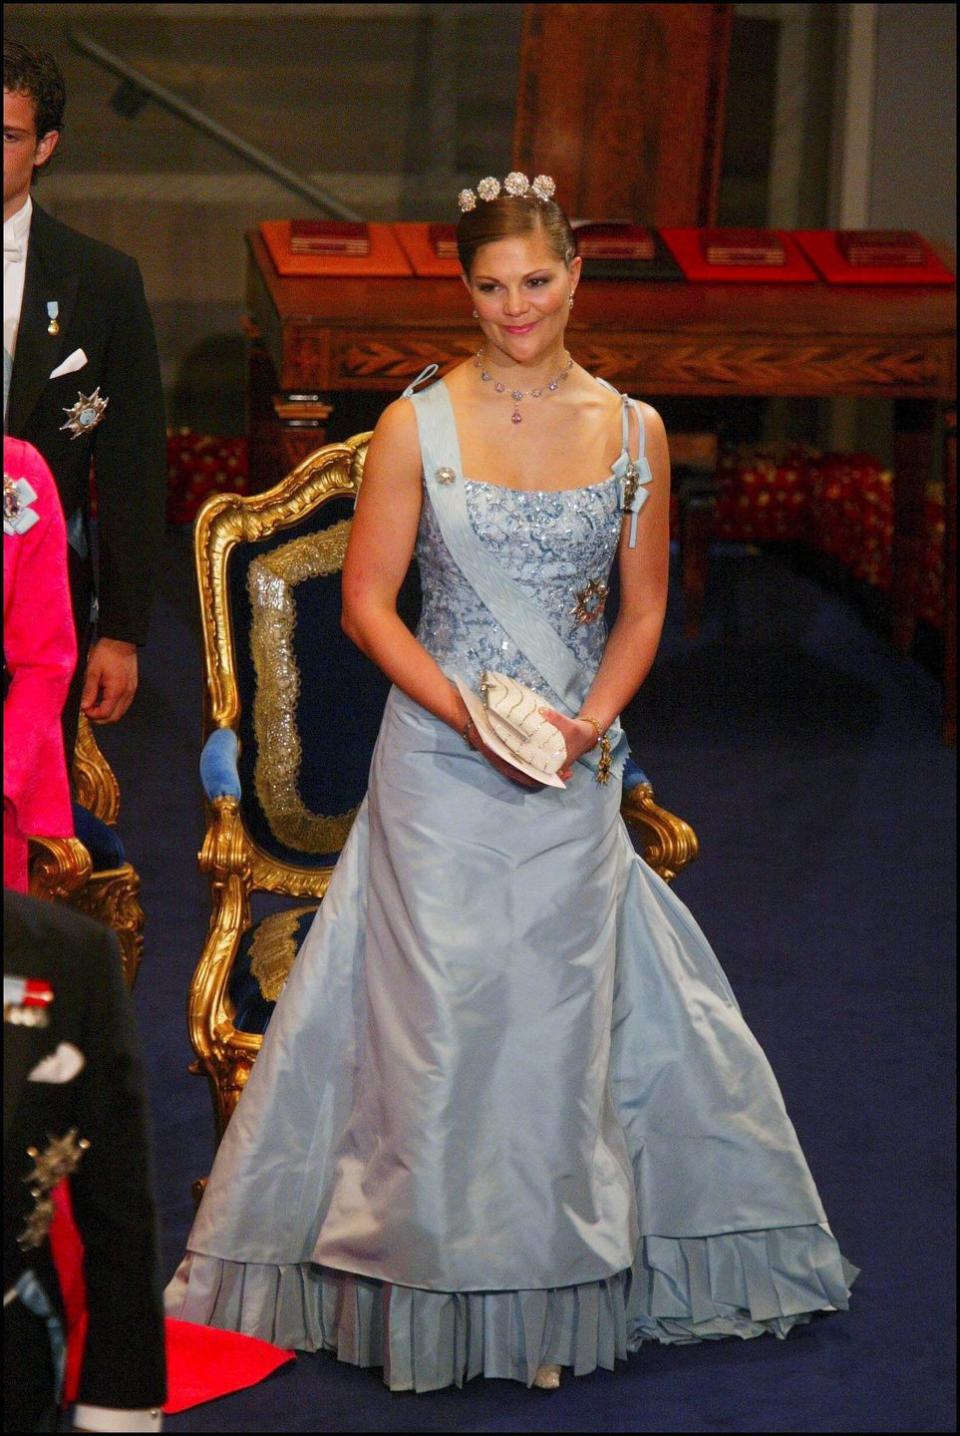 royal sweden family attends nobel prize ceremony in stockholm, sweden on december 10, 2003